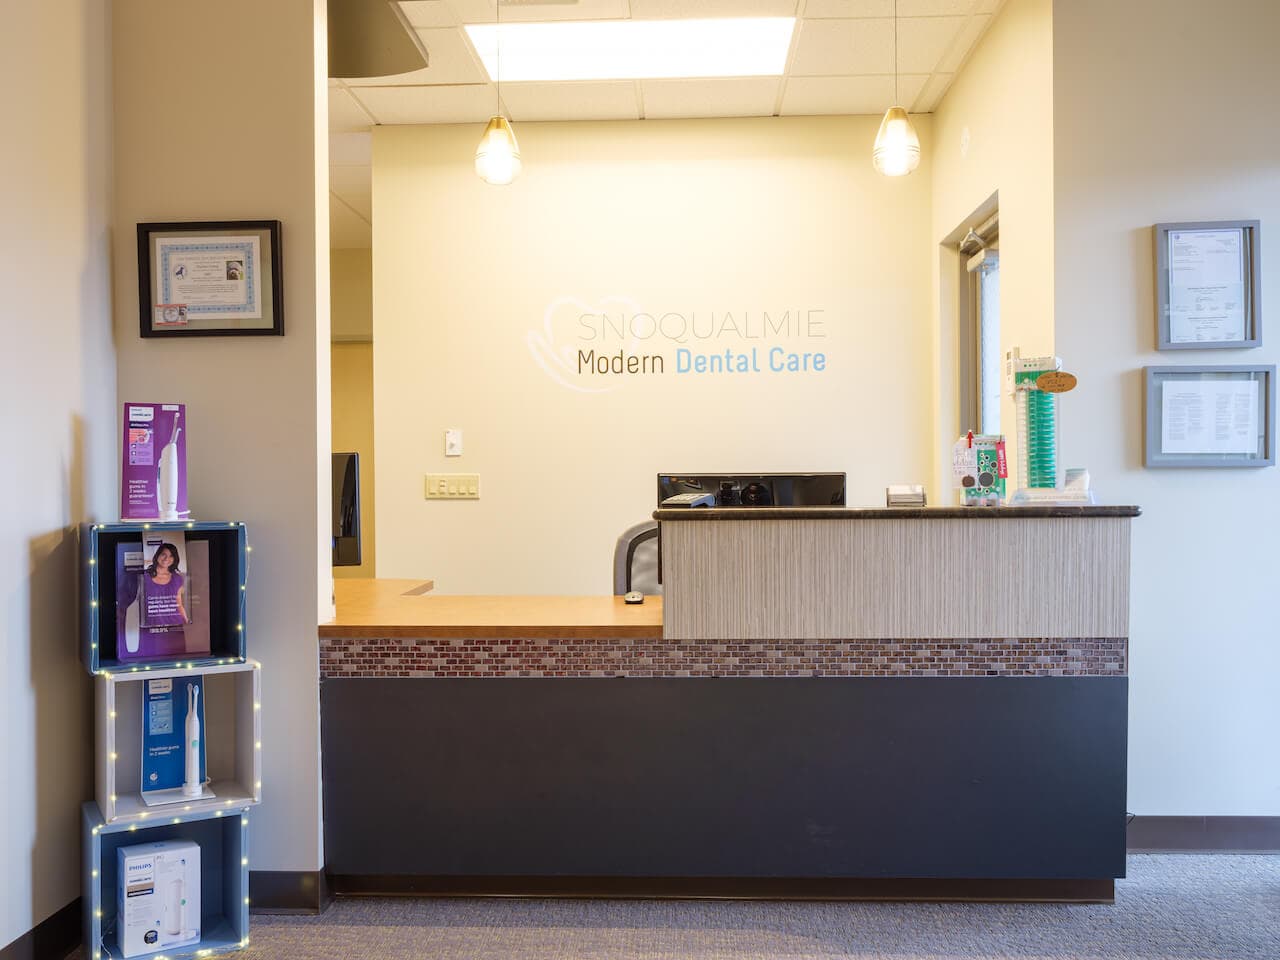 Snoqualmie Modern Dental Care reception area